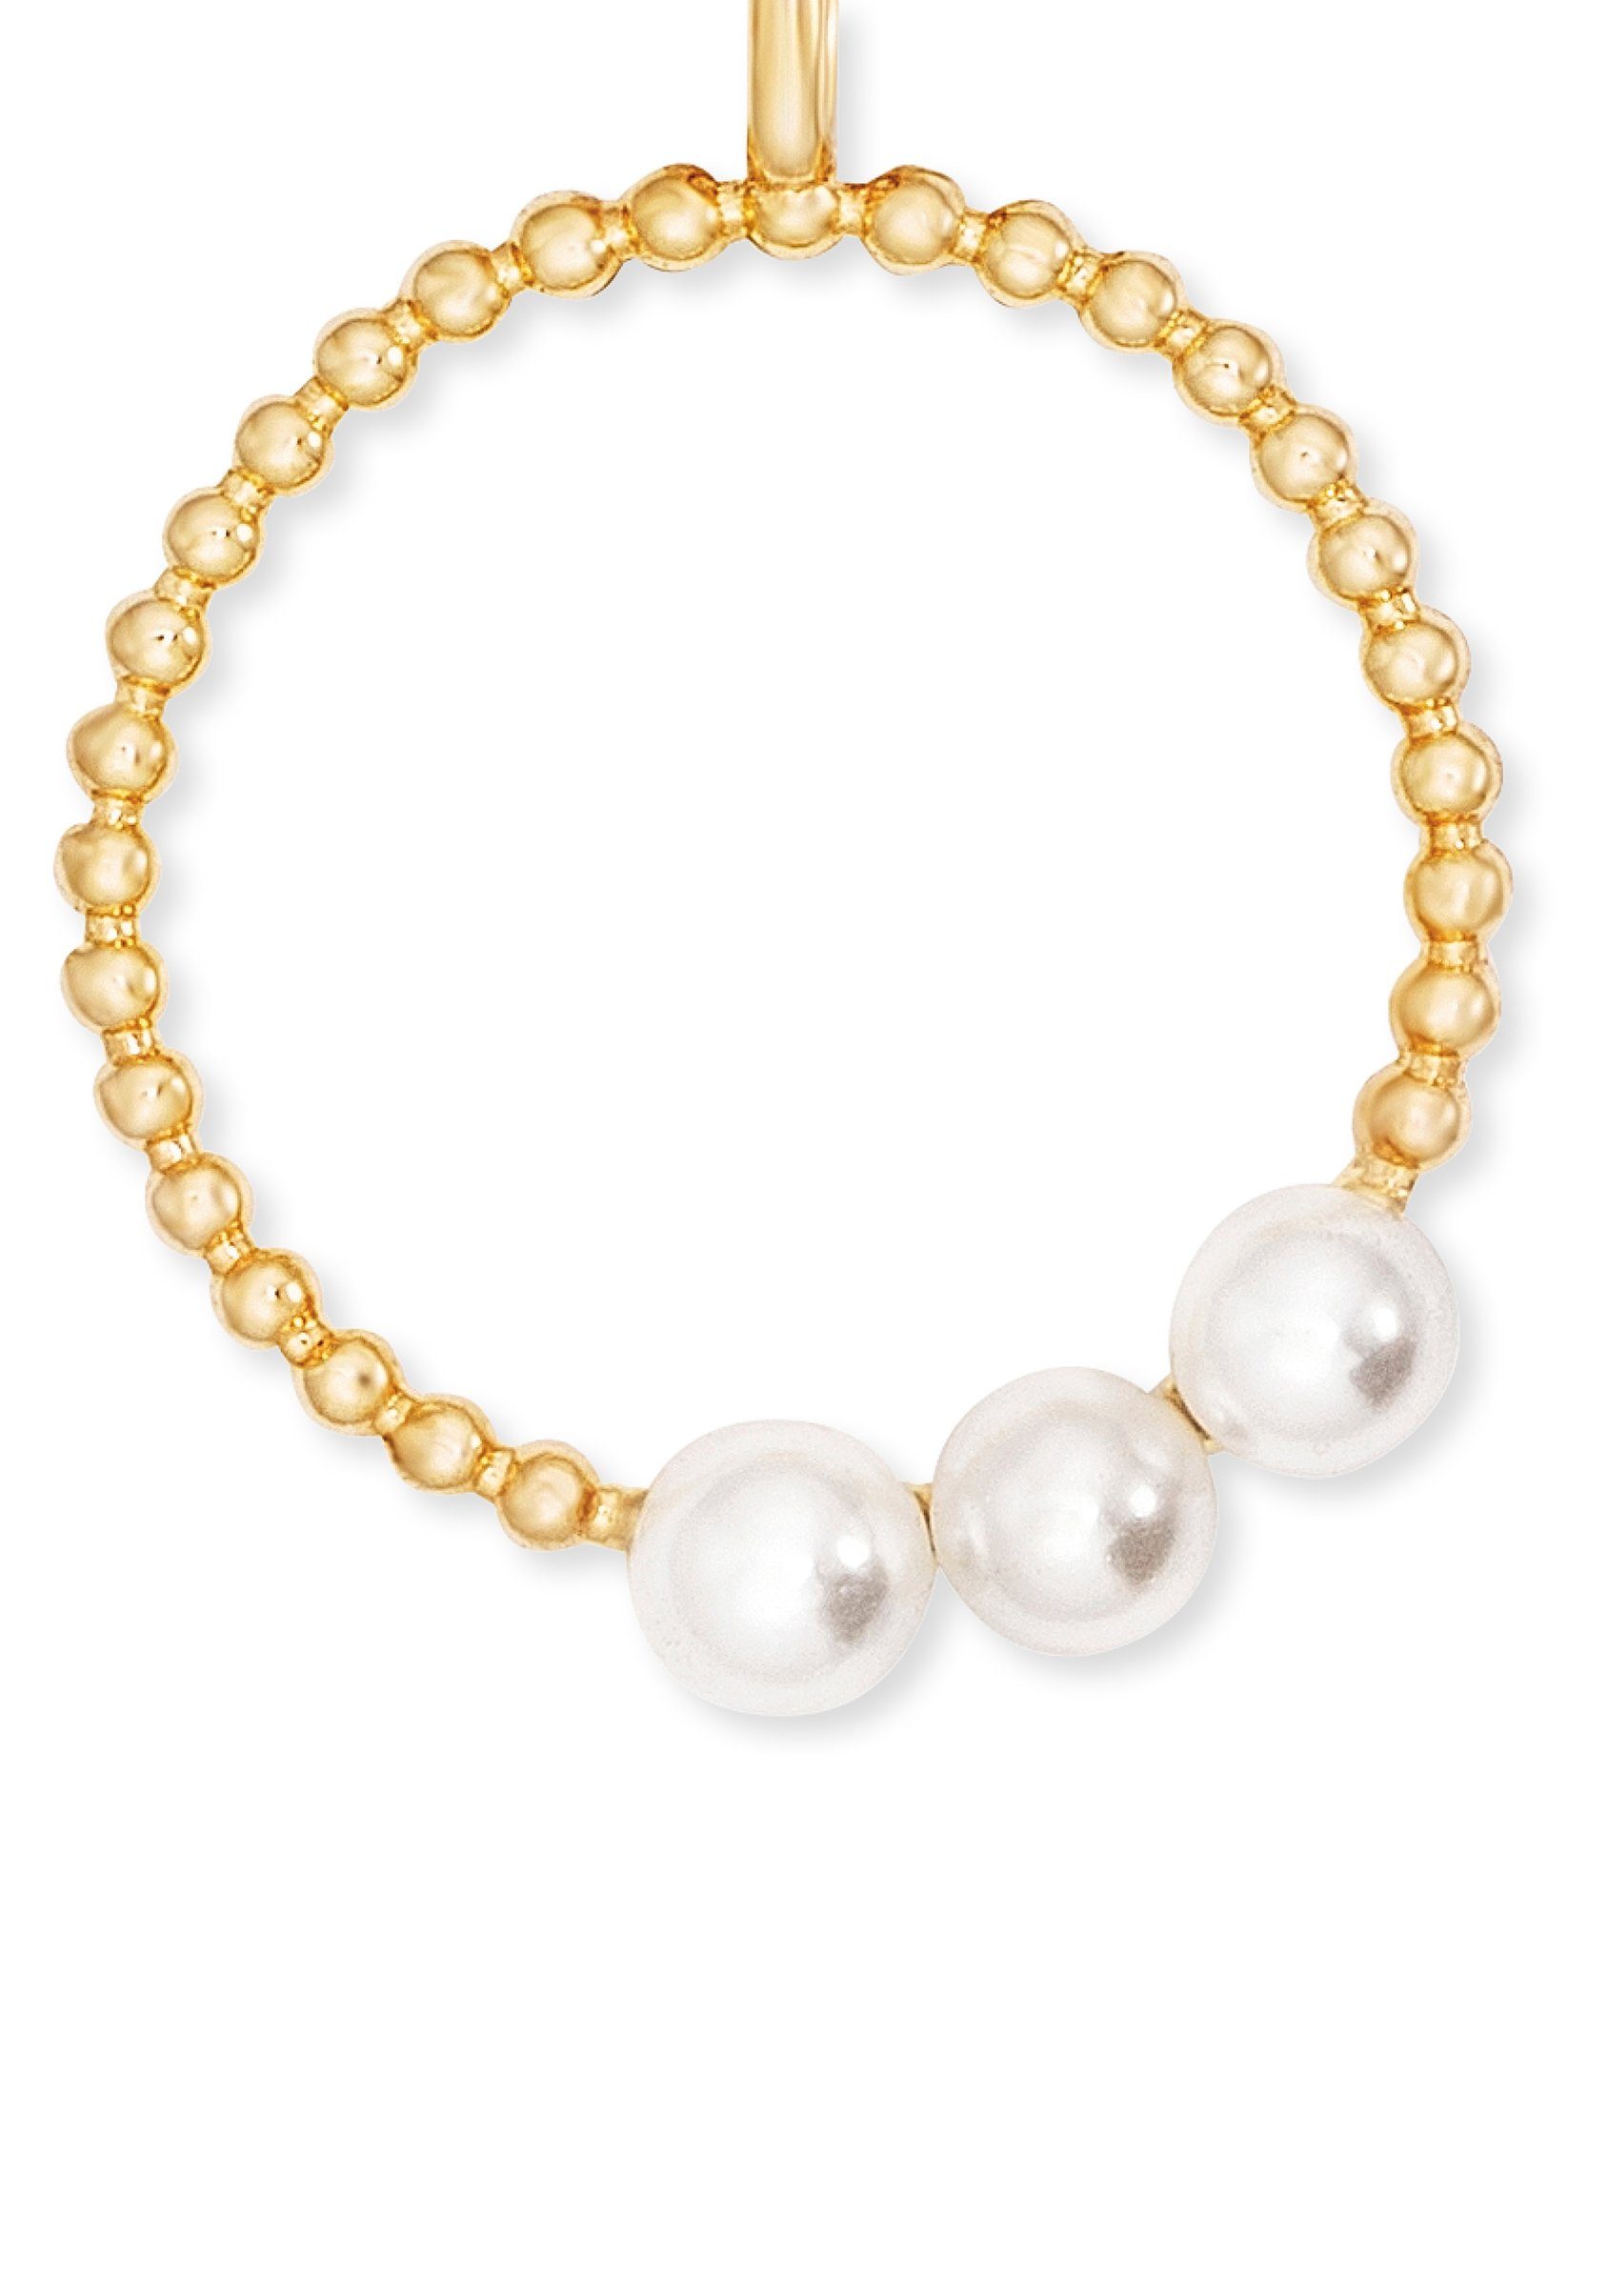 Pearls, Kette mit gelbgoldfarben-perlmuttfarben Anhänger mit Engelsrufer Muschelkernperle ERN-PEARLS, ERN-PEARLS-G,